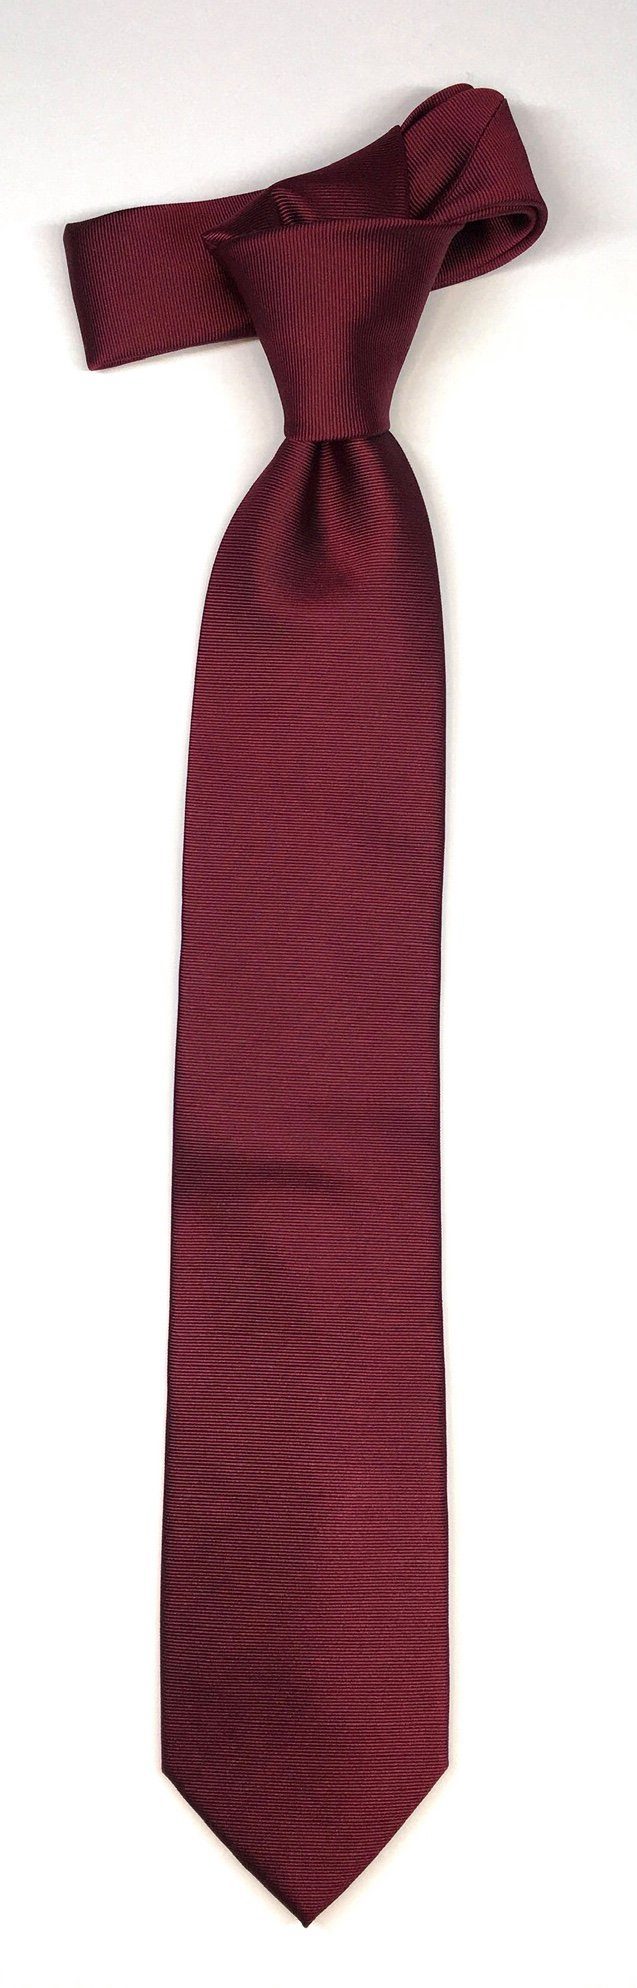 Seidenfalter Krawatte Seidenfalter Krawatte edlen im Seidenfalter Uni 7cm Wine Uni Krawatte Design